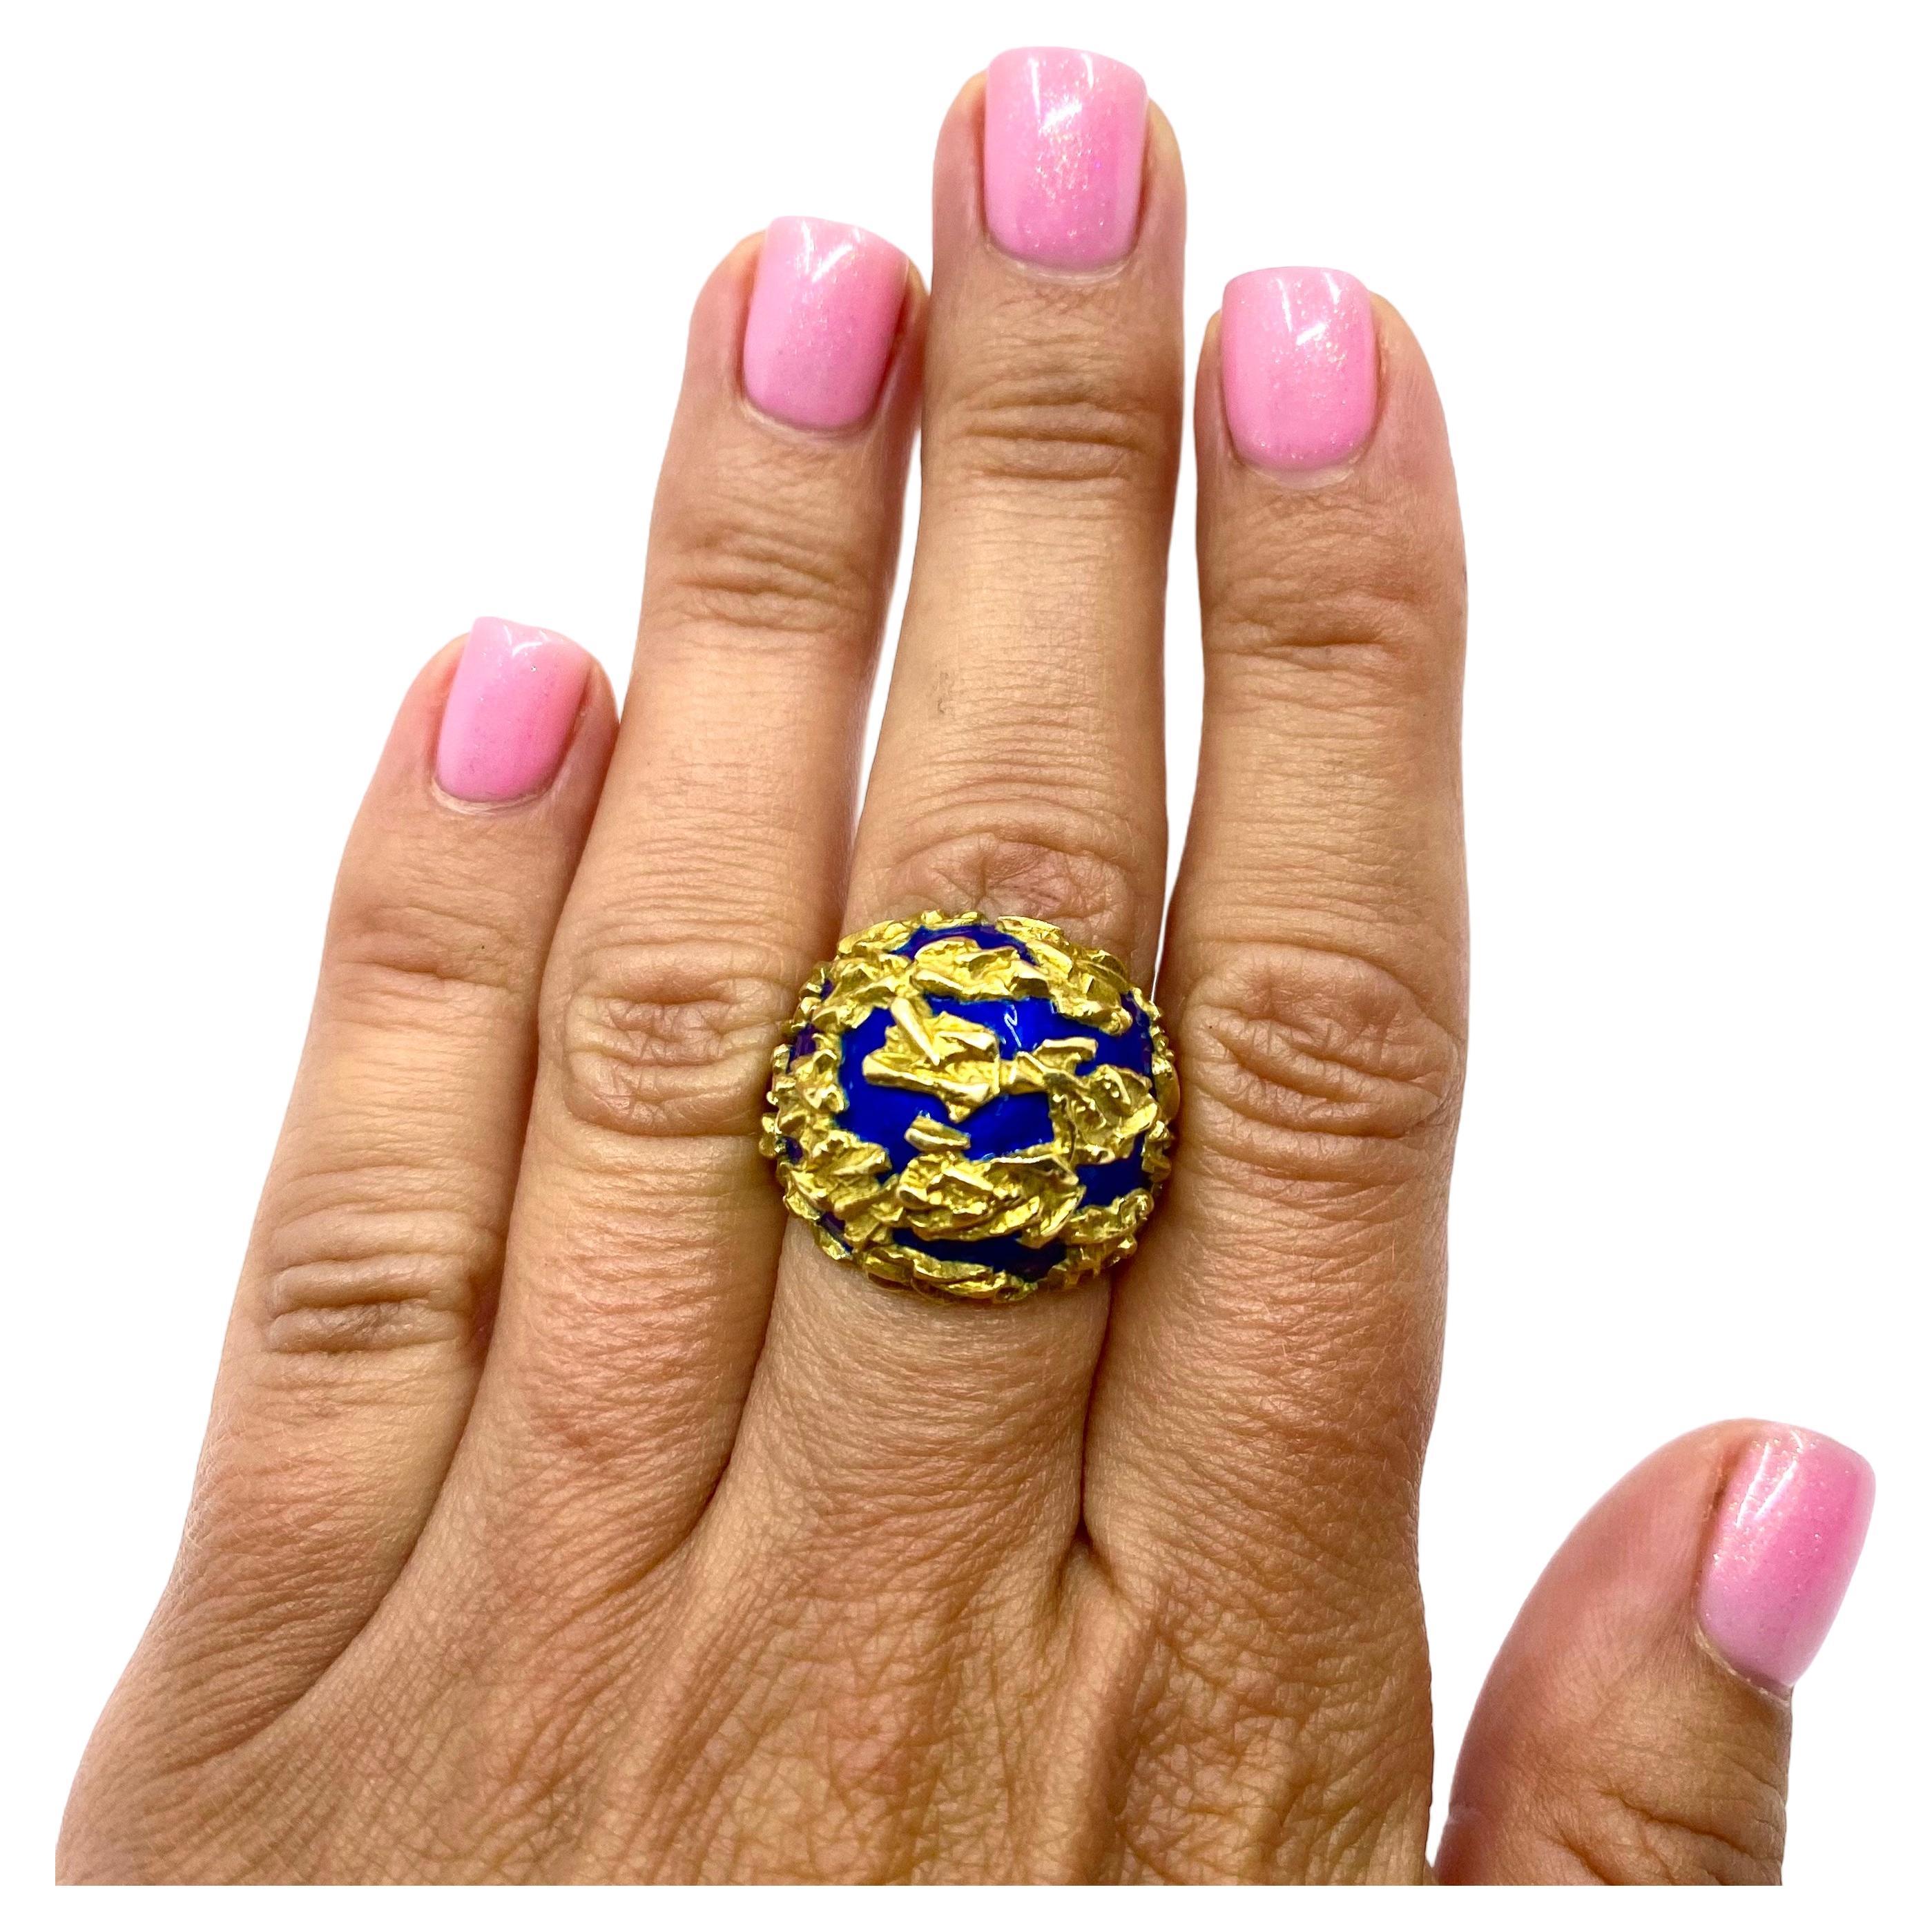 Ein eleganter Gubelin Kuppelring aus 18 Karat Gold und blauem Emaille.
Der Ring hat ein abstraktes Design mit strukturierten Goldspritzern auf dem Emaillehintergrund. Die Helligkeit der Emaille bildet einen reizvollen Kontrast zum Goldton. Der